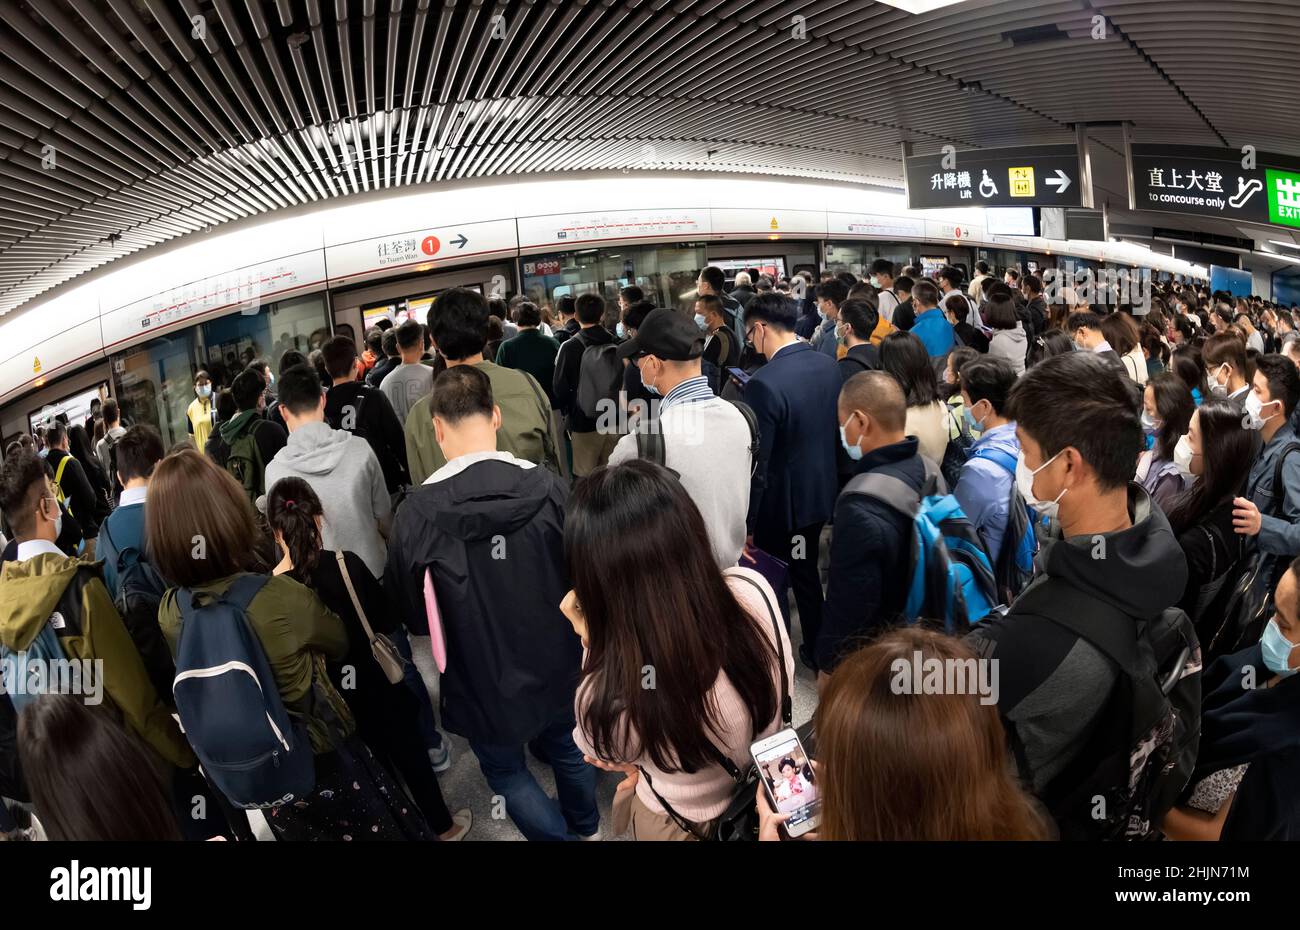 Crowded Hong Kong MTR subway during the Covid Pandemic, Hong Kong, China. Stock Photo